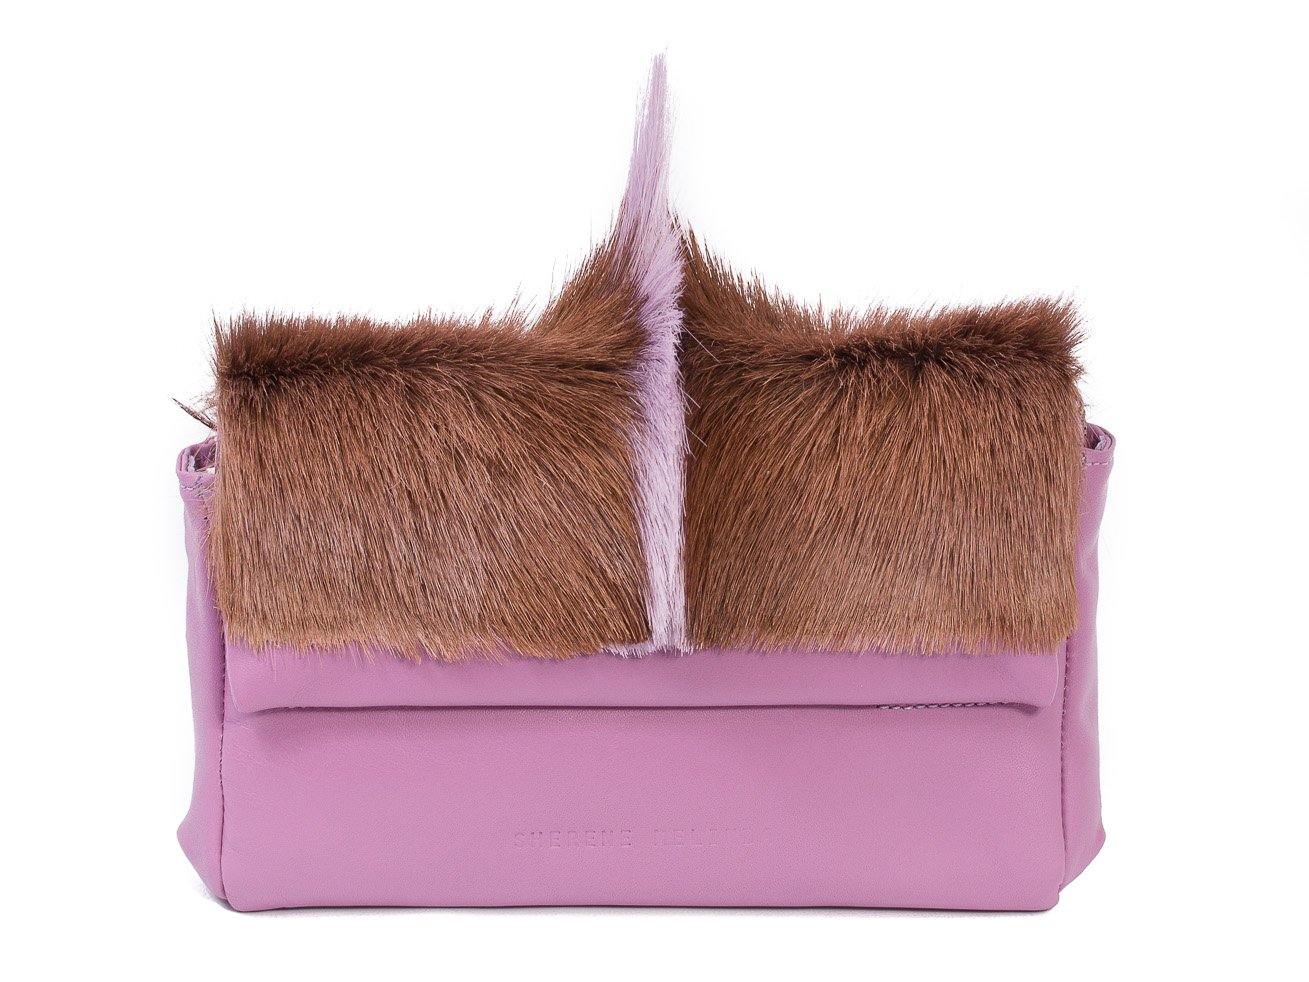 sherene melinda springbok hair-on-hide lavender leather Sophy SS18 Clutch Bag Fan front